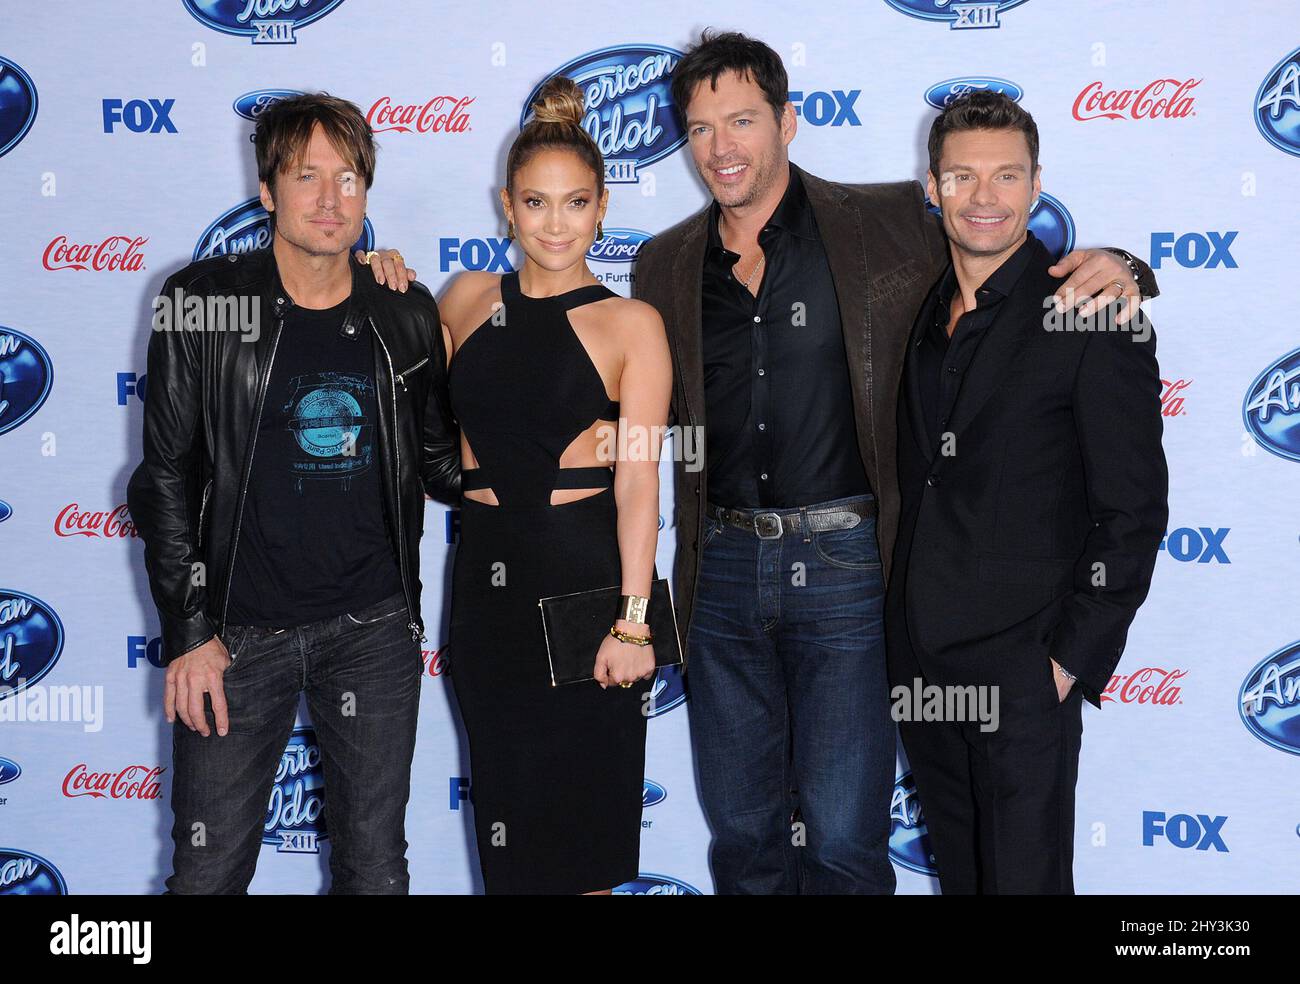 Keith Urban, Jennifer Lopez, Harry Connick Jr. Et Ryan Seacrest participent à l'événement des 13 finalistes d'American Idol, à Los Angeles Banque D'Images